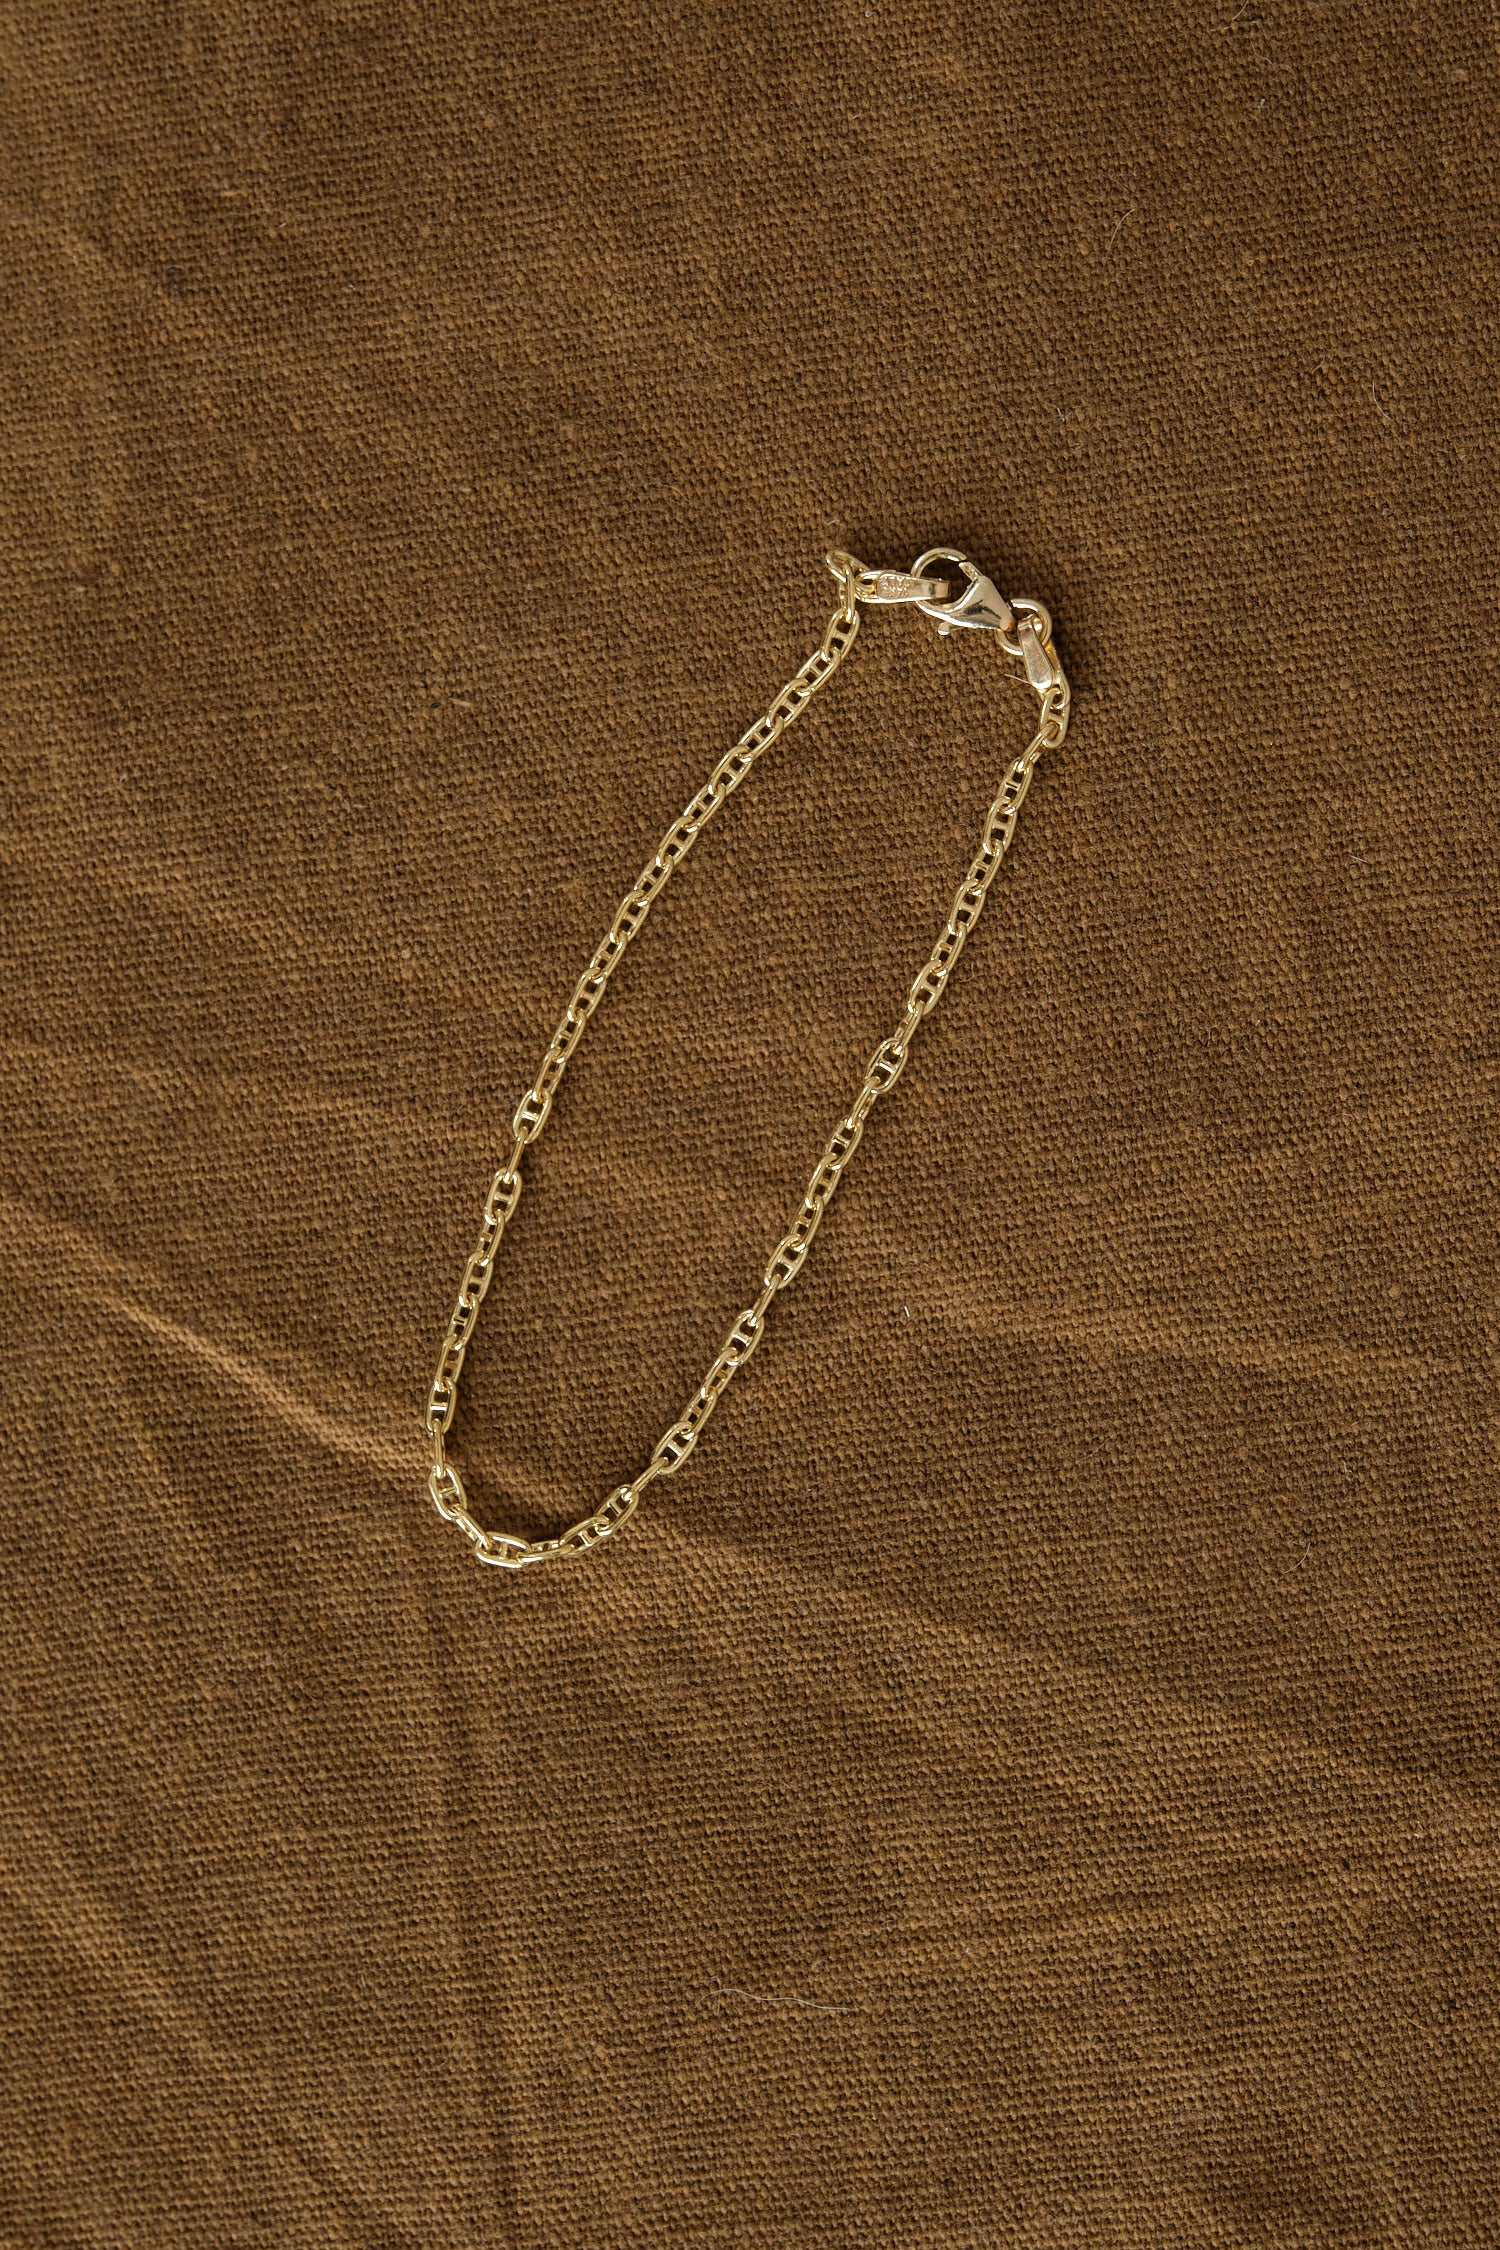 stephanie windsor sold gold bracelet